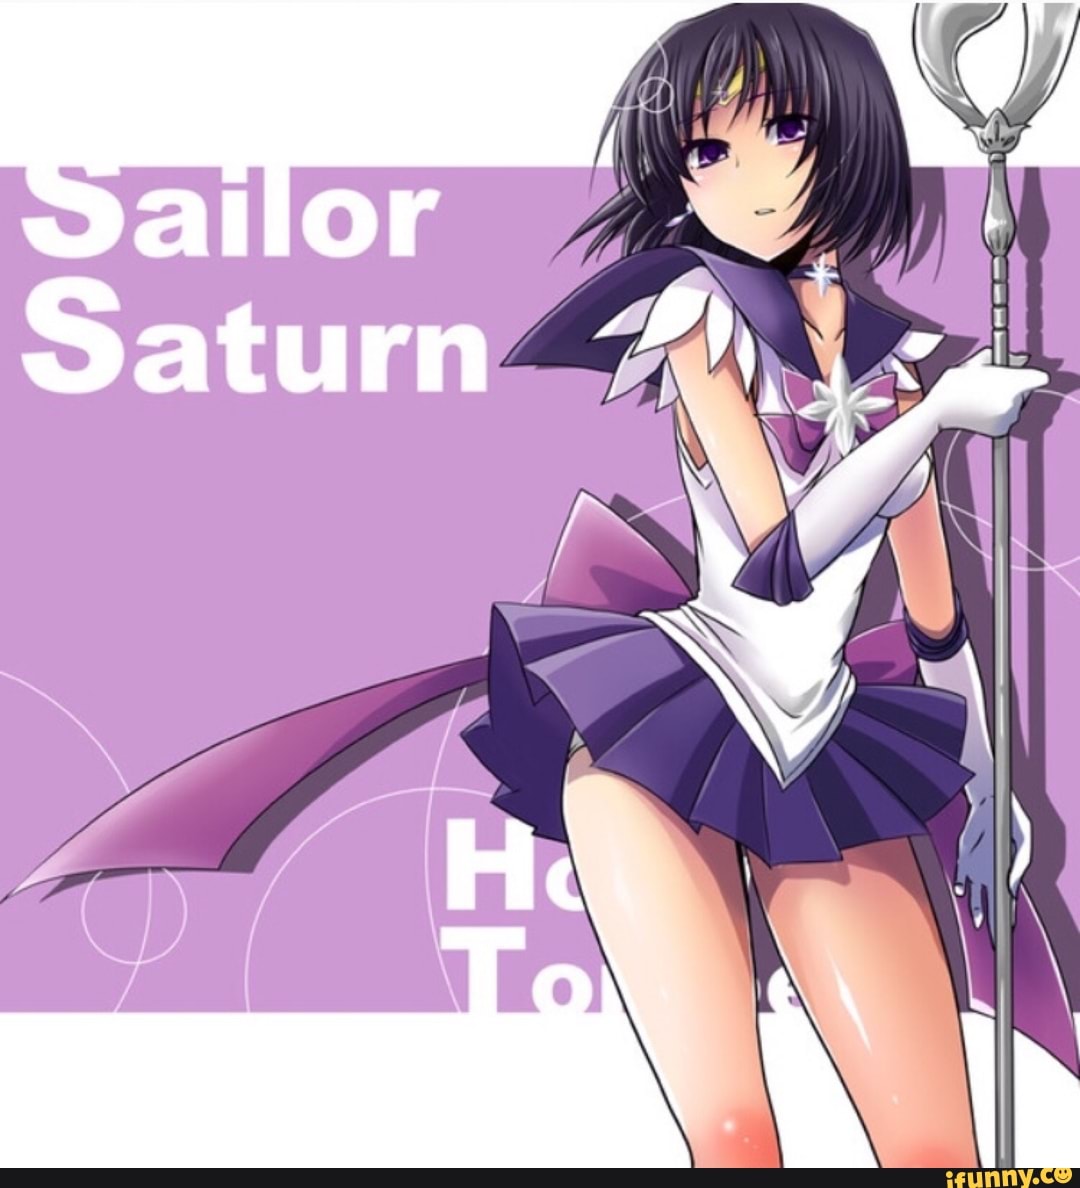 Sailor saturn quotes